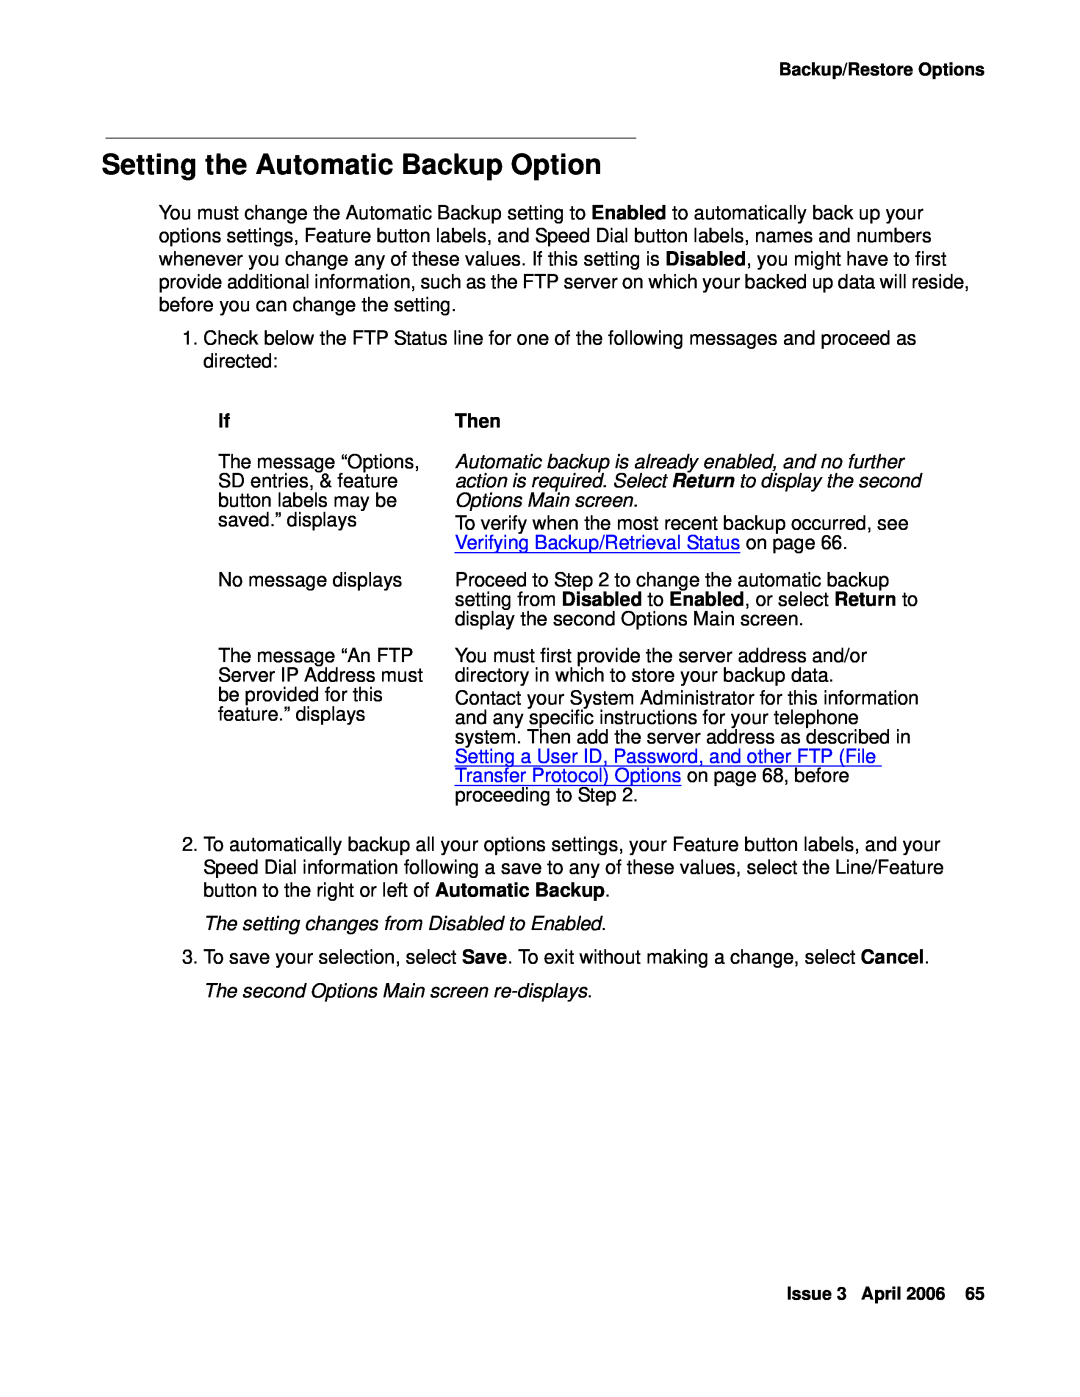 Avaya 4621SW, 4620SW manual Setting the Automatic Backup Option 